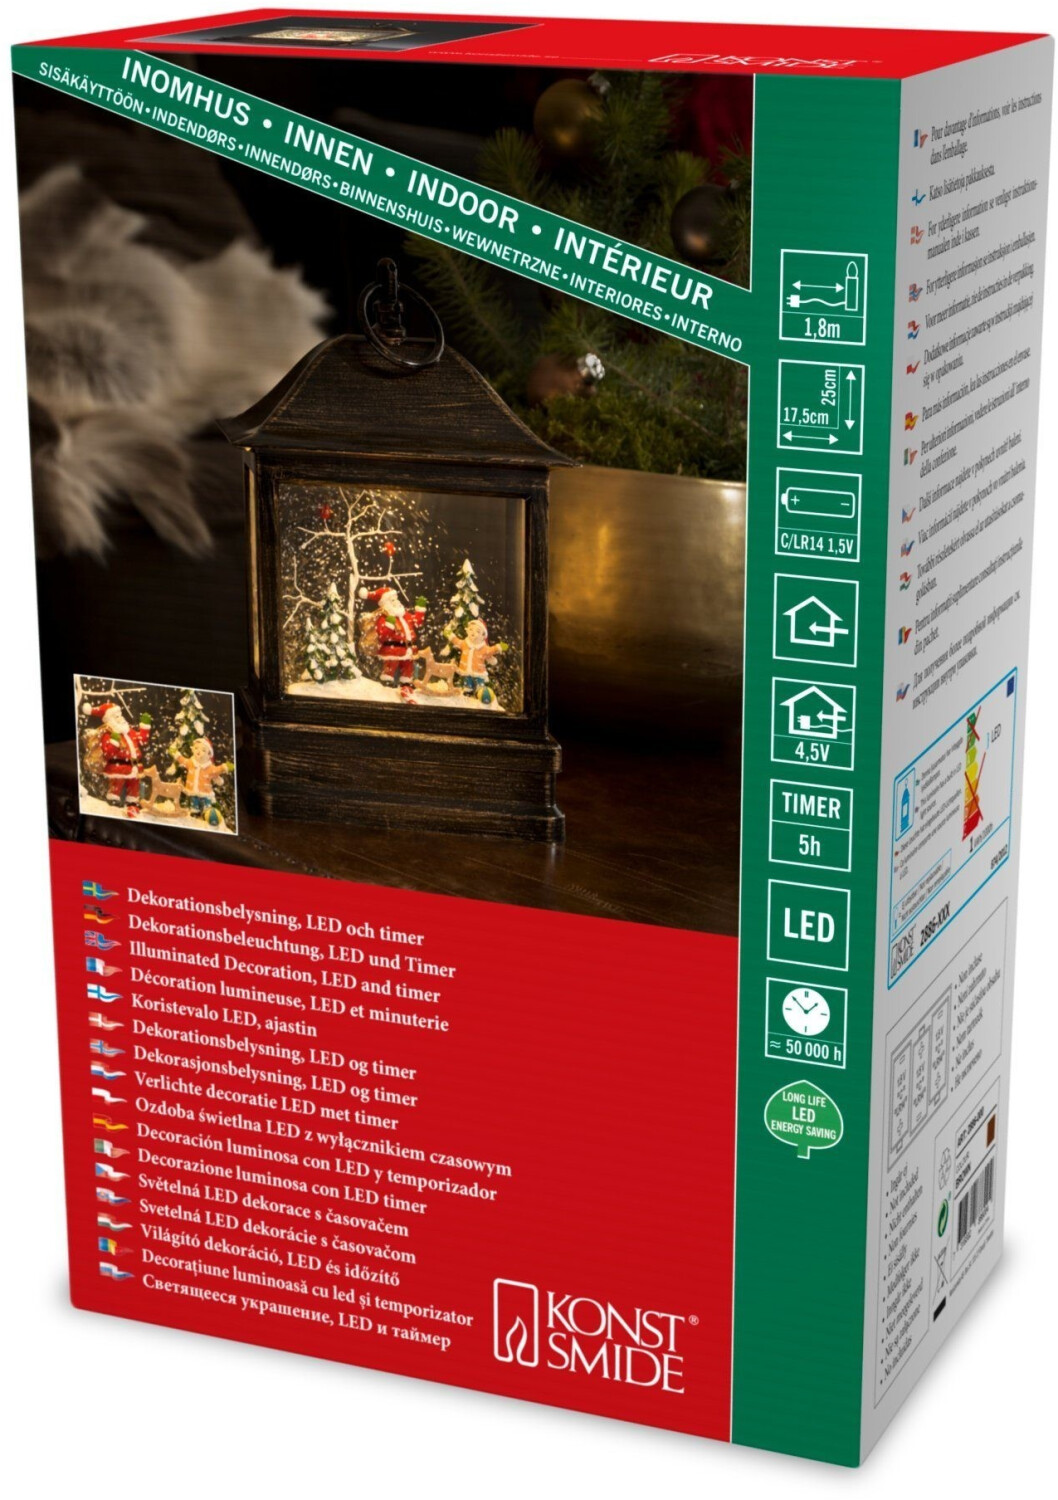 Preisvergleich | € 49,99 bei LED Kind und Schneelaterne ab Konstsmide Weihnachtsmann (2886-000)